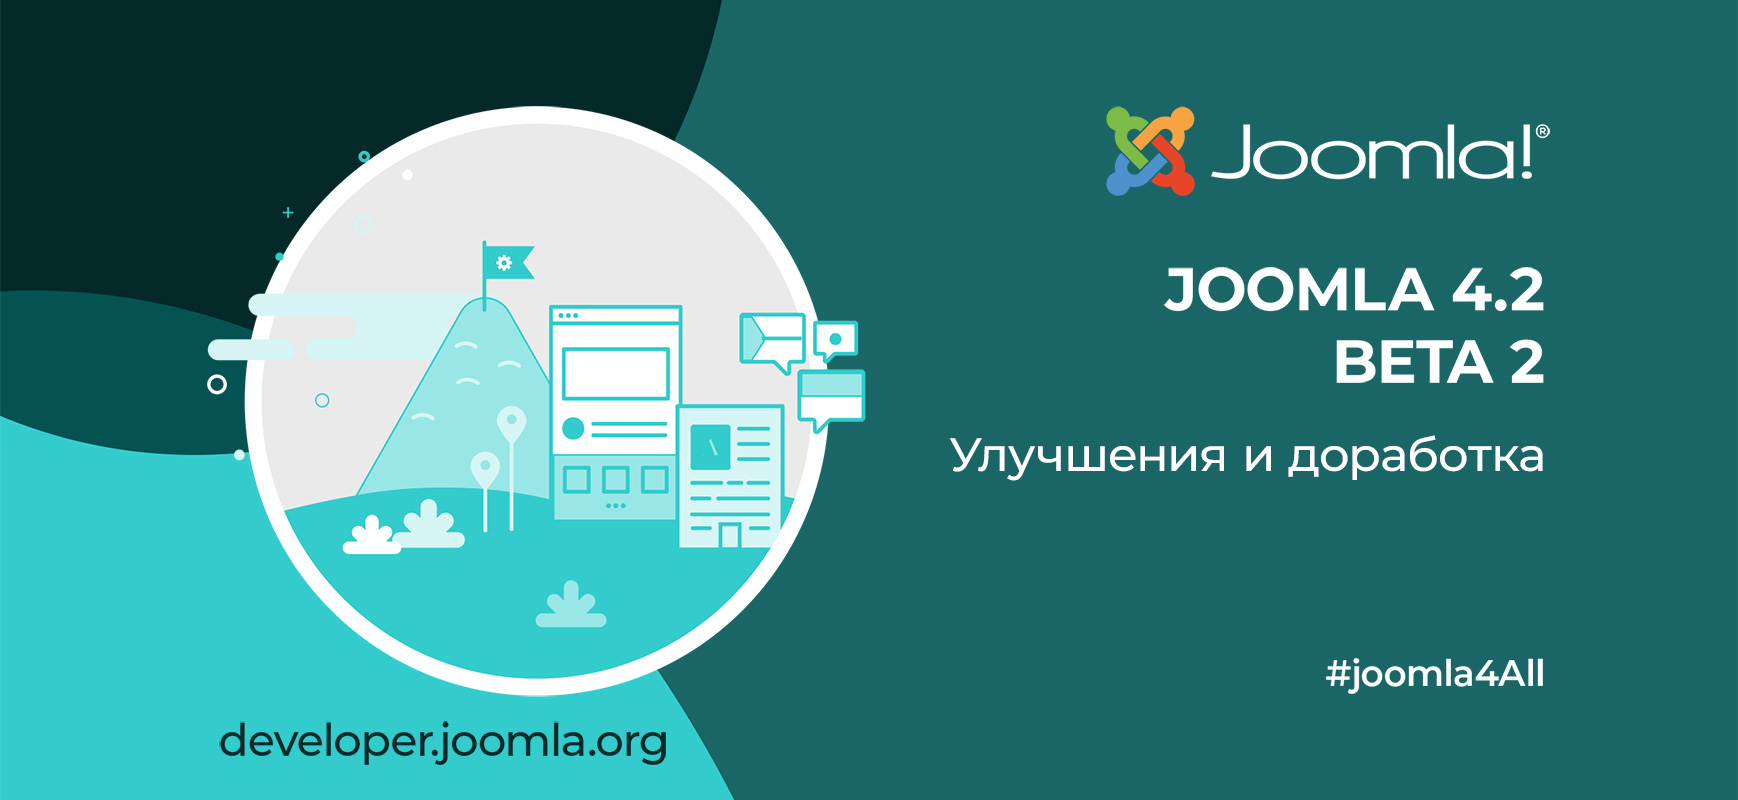 Релиз Joomla 4.2 Beta 2